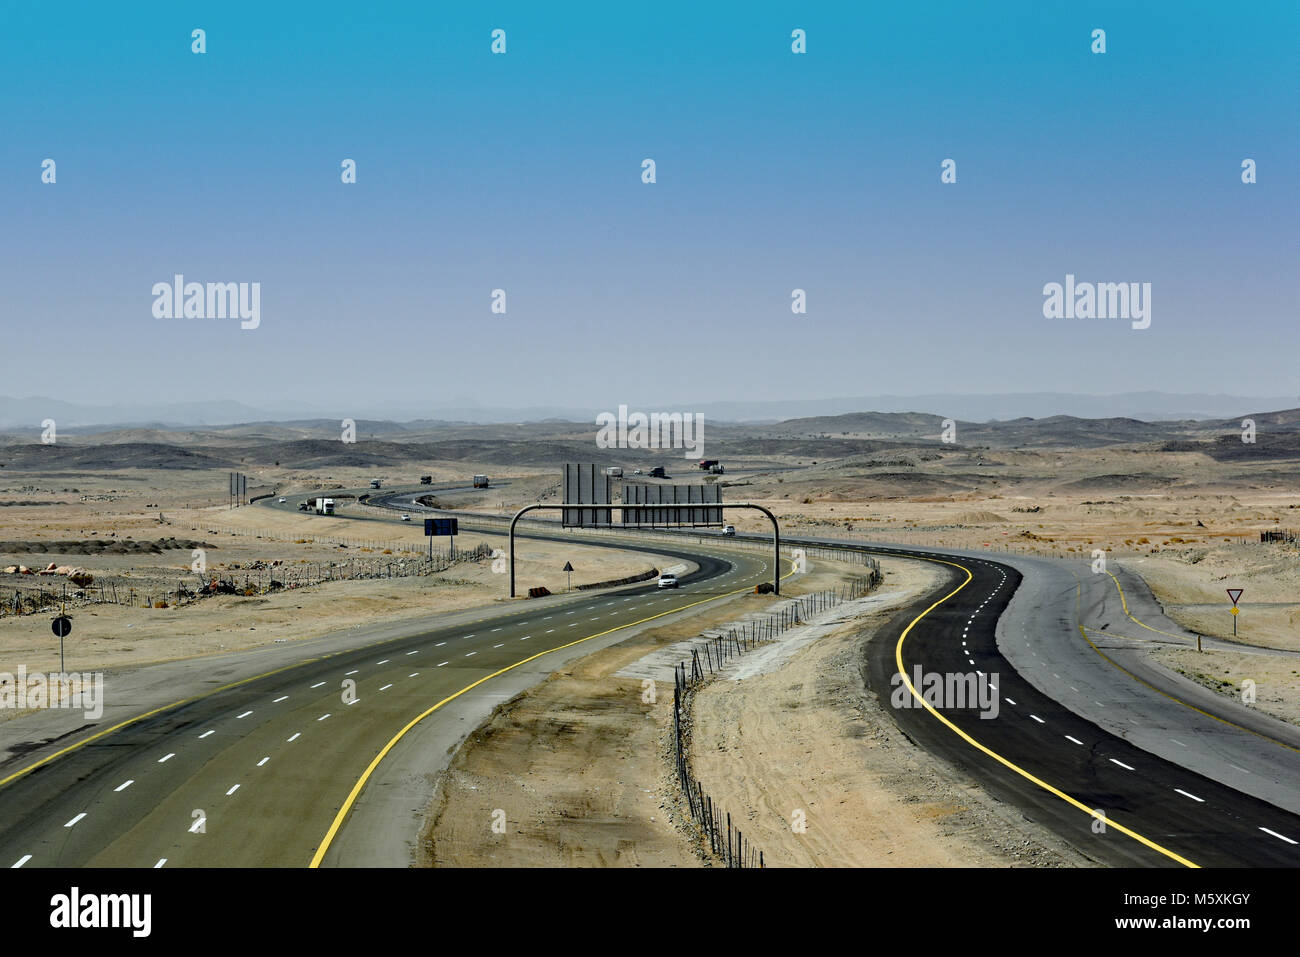 L'autoroute principale menant hors du désert en Arabie saoudite venant de l'ouest. Banque D'Images